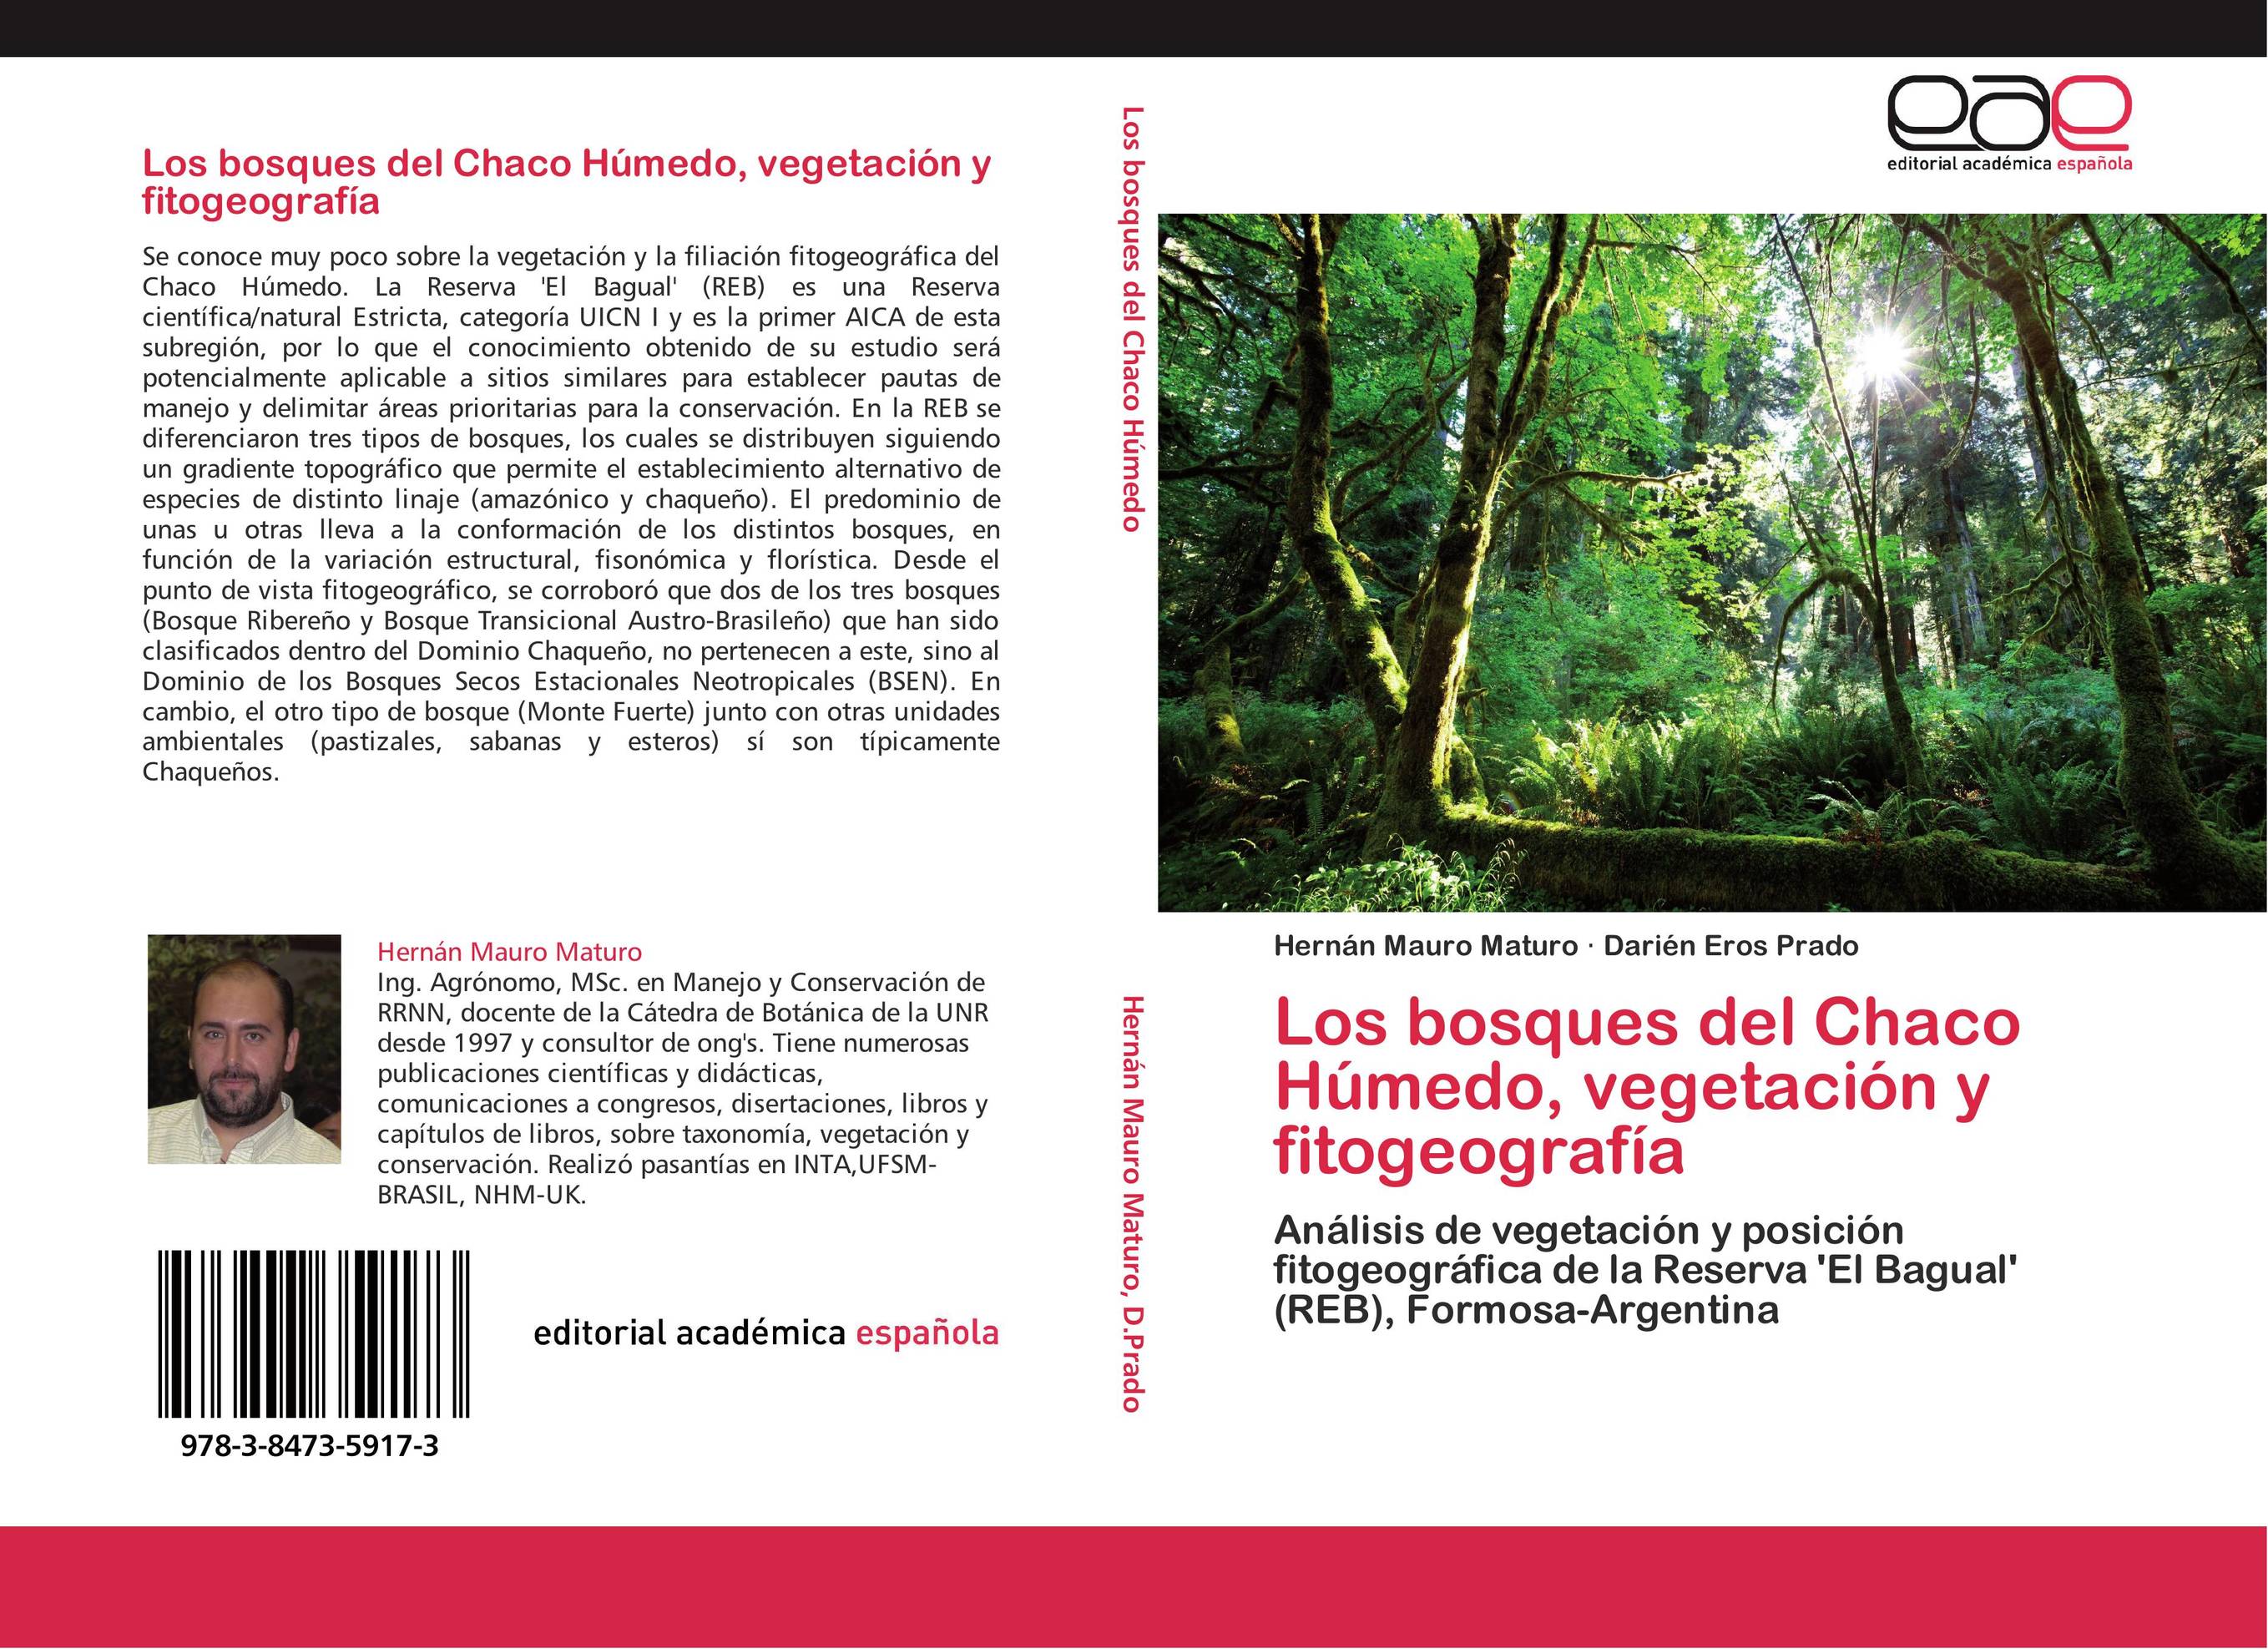 Los bosques del Chaco Húmedo, vegetación y fitogeografía